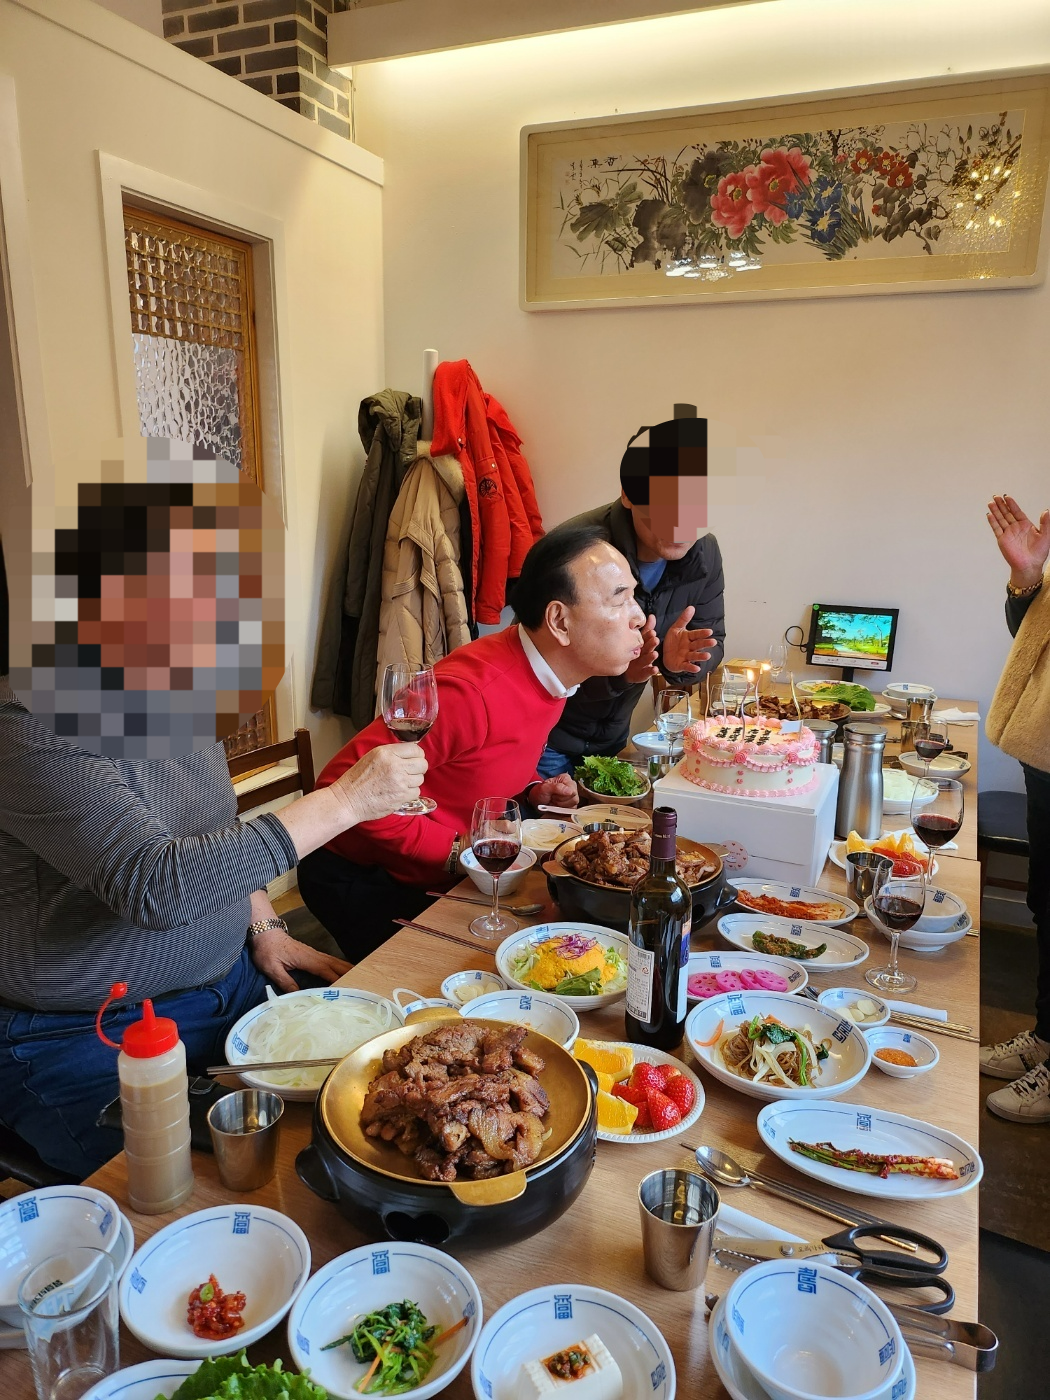 충북도 소방공무원이 참석한 박덕흠(가운데) 의원 지지 식사자리.  동양일보 제공